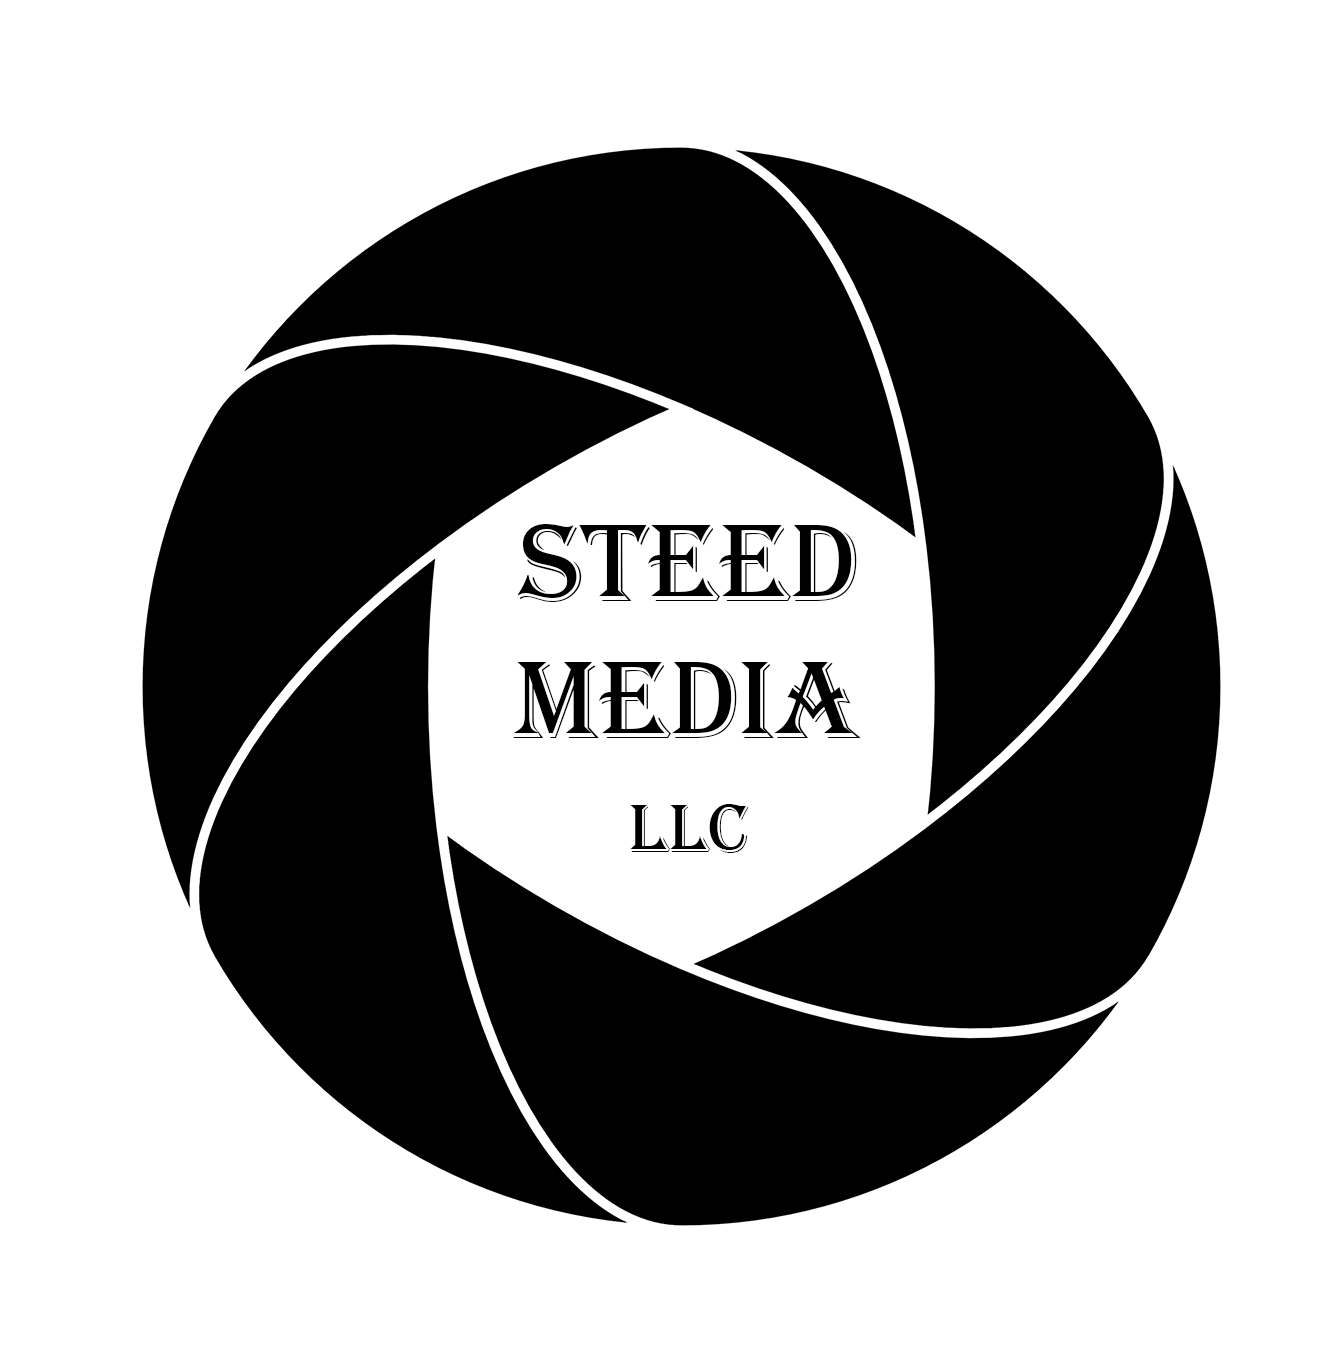 Steed Media LLC